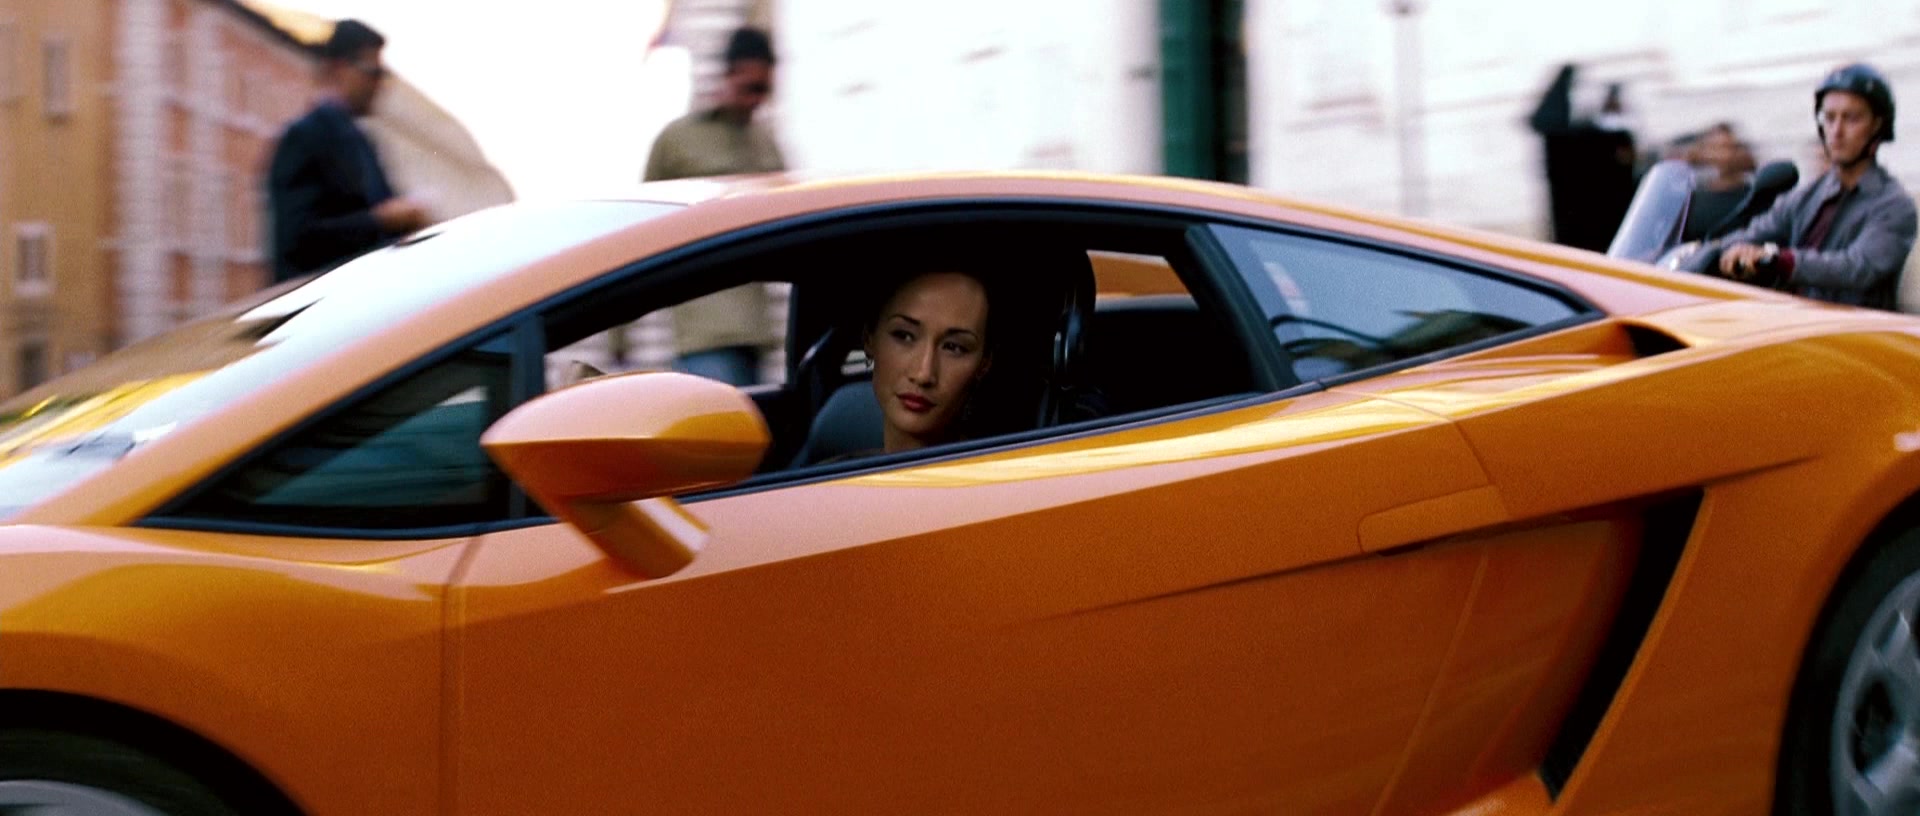 Casos de Famíla  Lamborghini-Gallardo-Orange-Sports-Car-Driven-by-Maggie-Q-in-Mission-Impossible-2